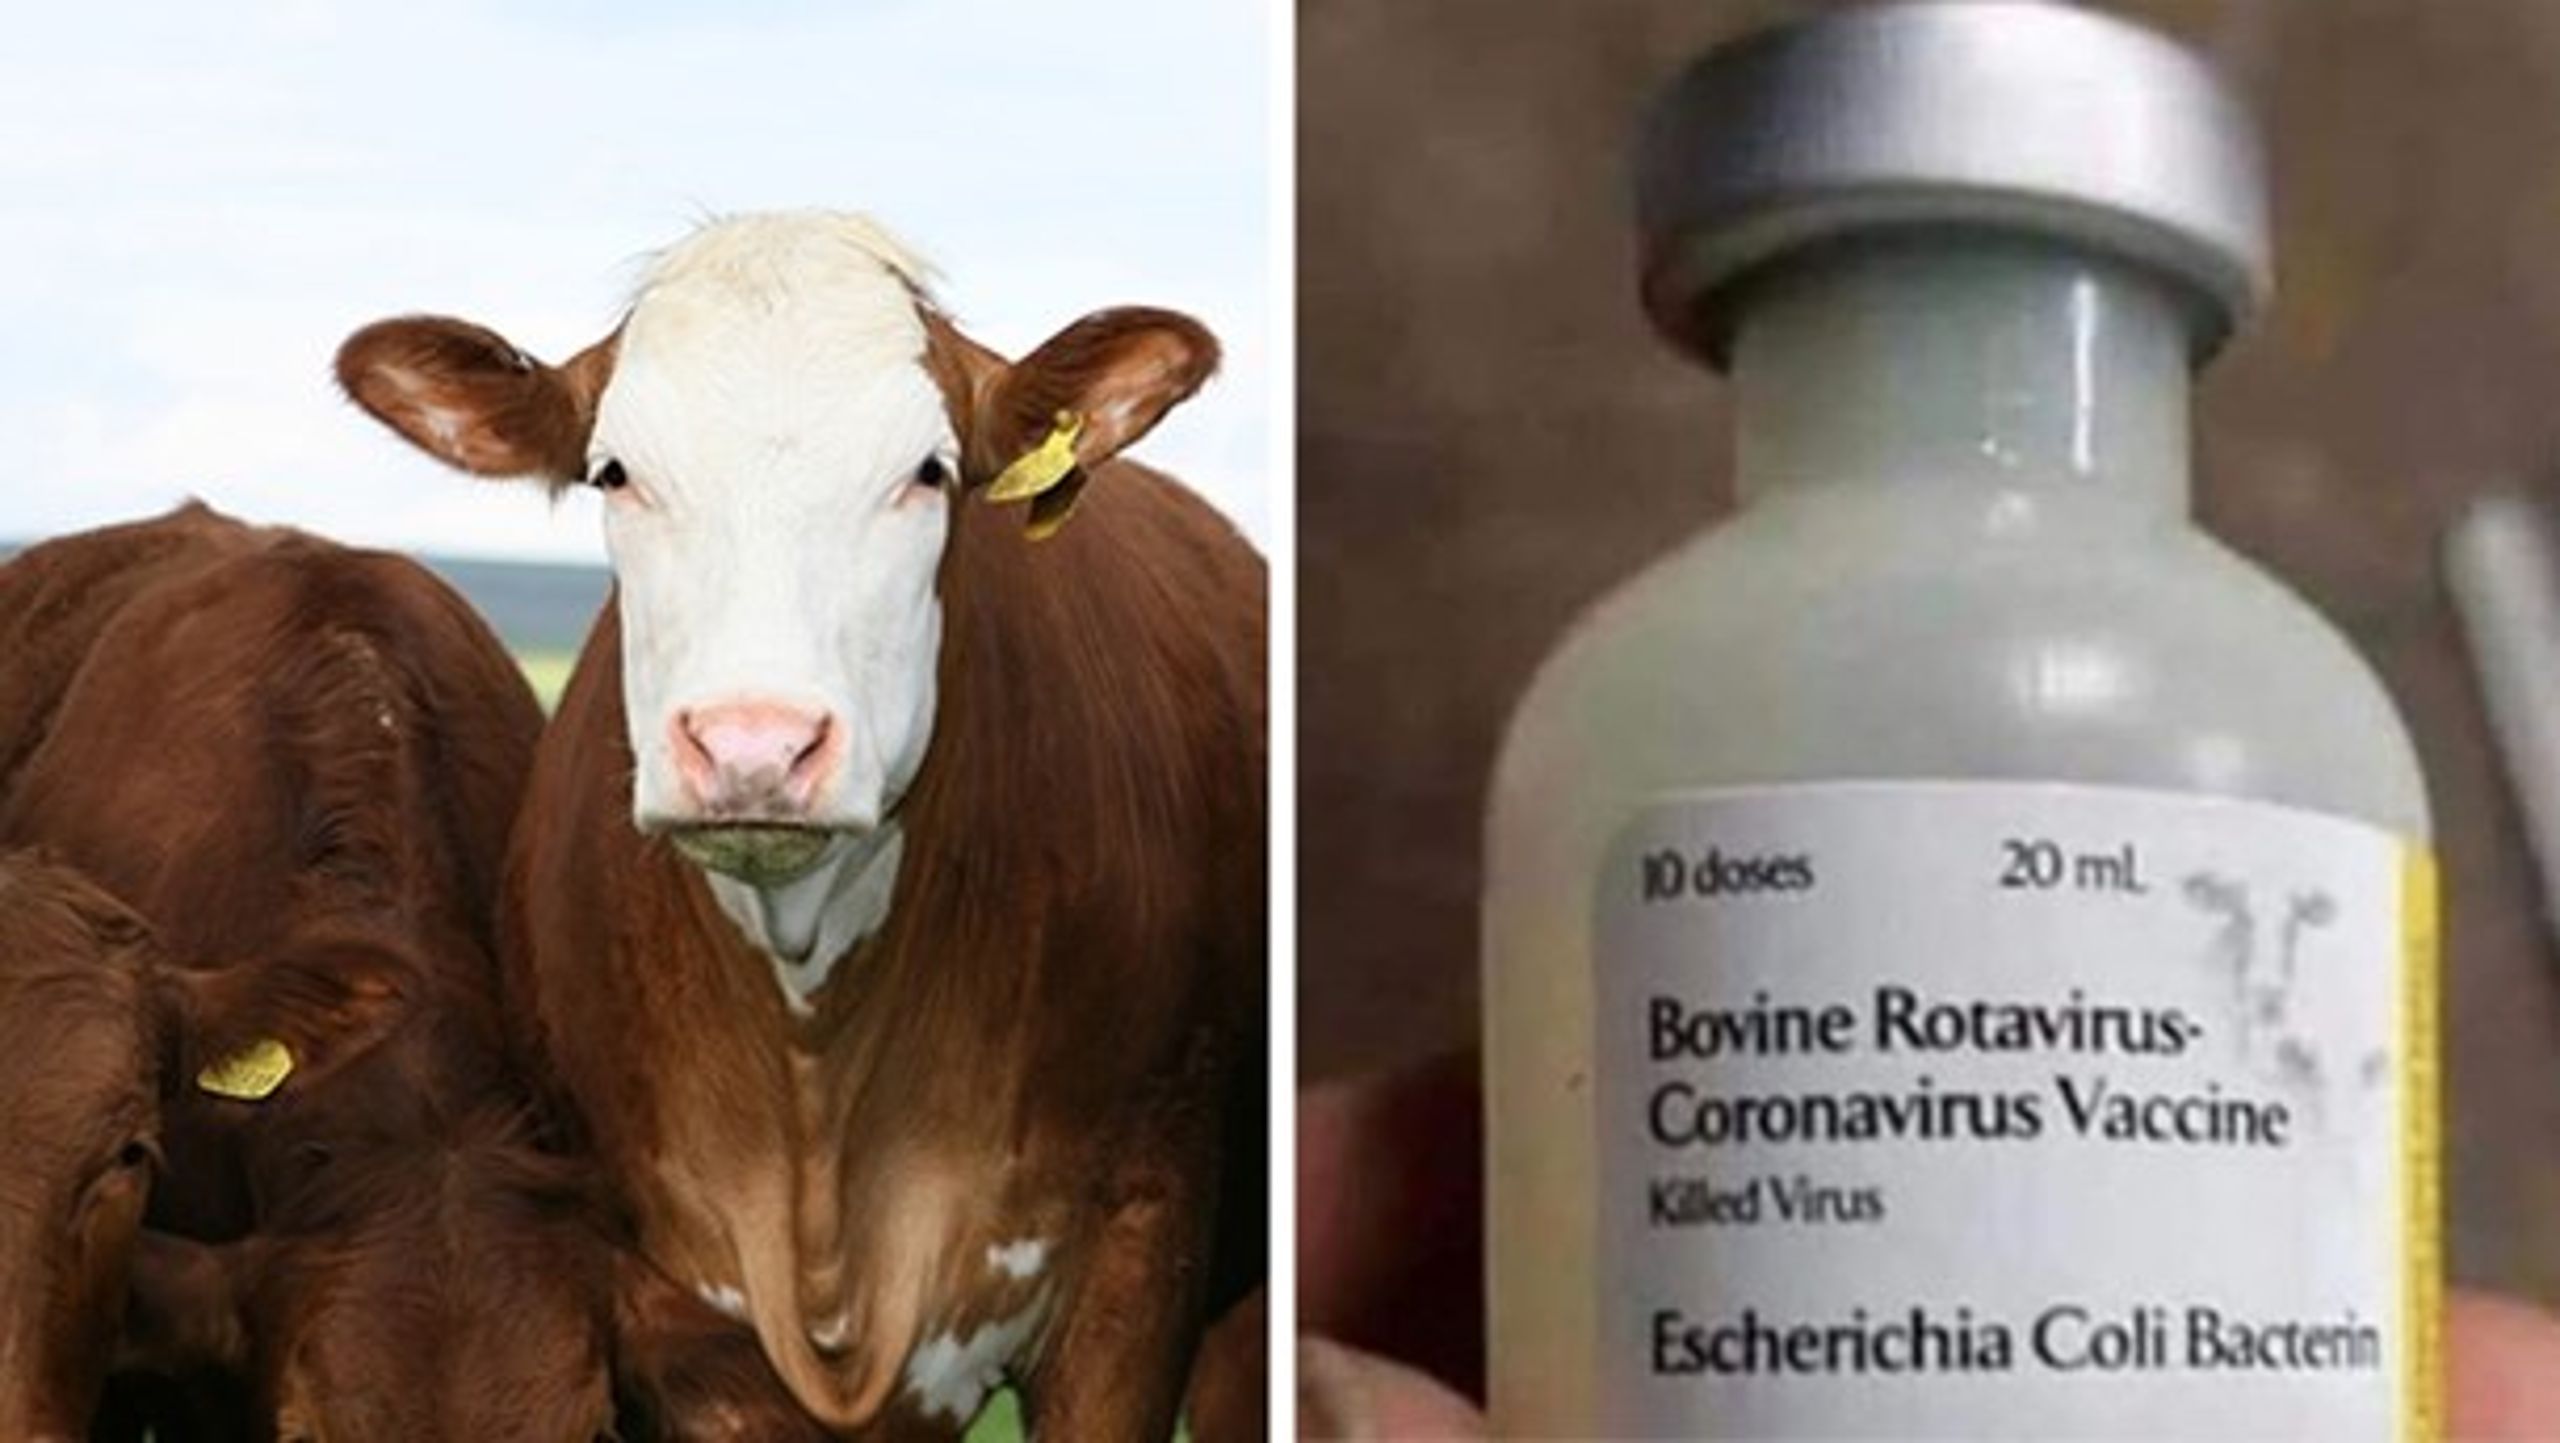 Man har i mange år rigtig nok vaccineret kvæg mod en coronavirus. Men medicinen på billedet har intet at gøre med den virus, der hærger flere lande verden over i disse dage – og i øvrigt må den slet ikke bruges på mennesker.